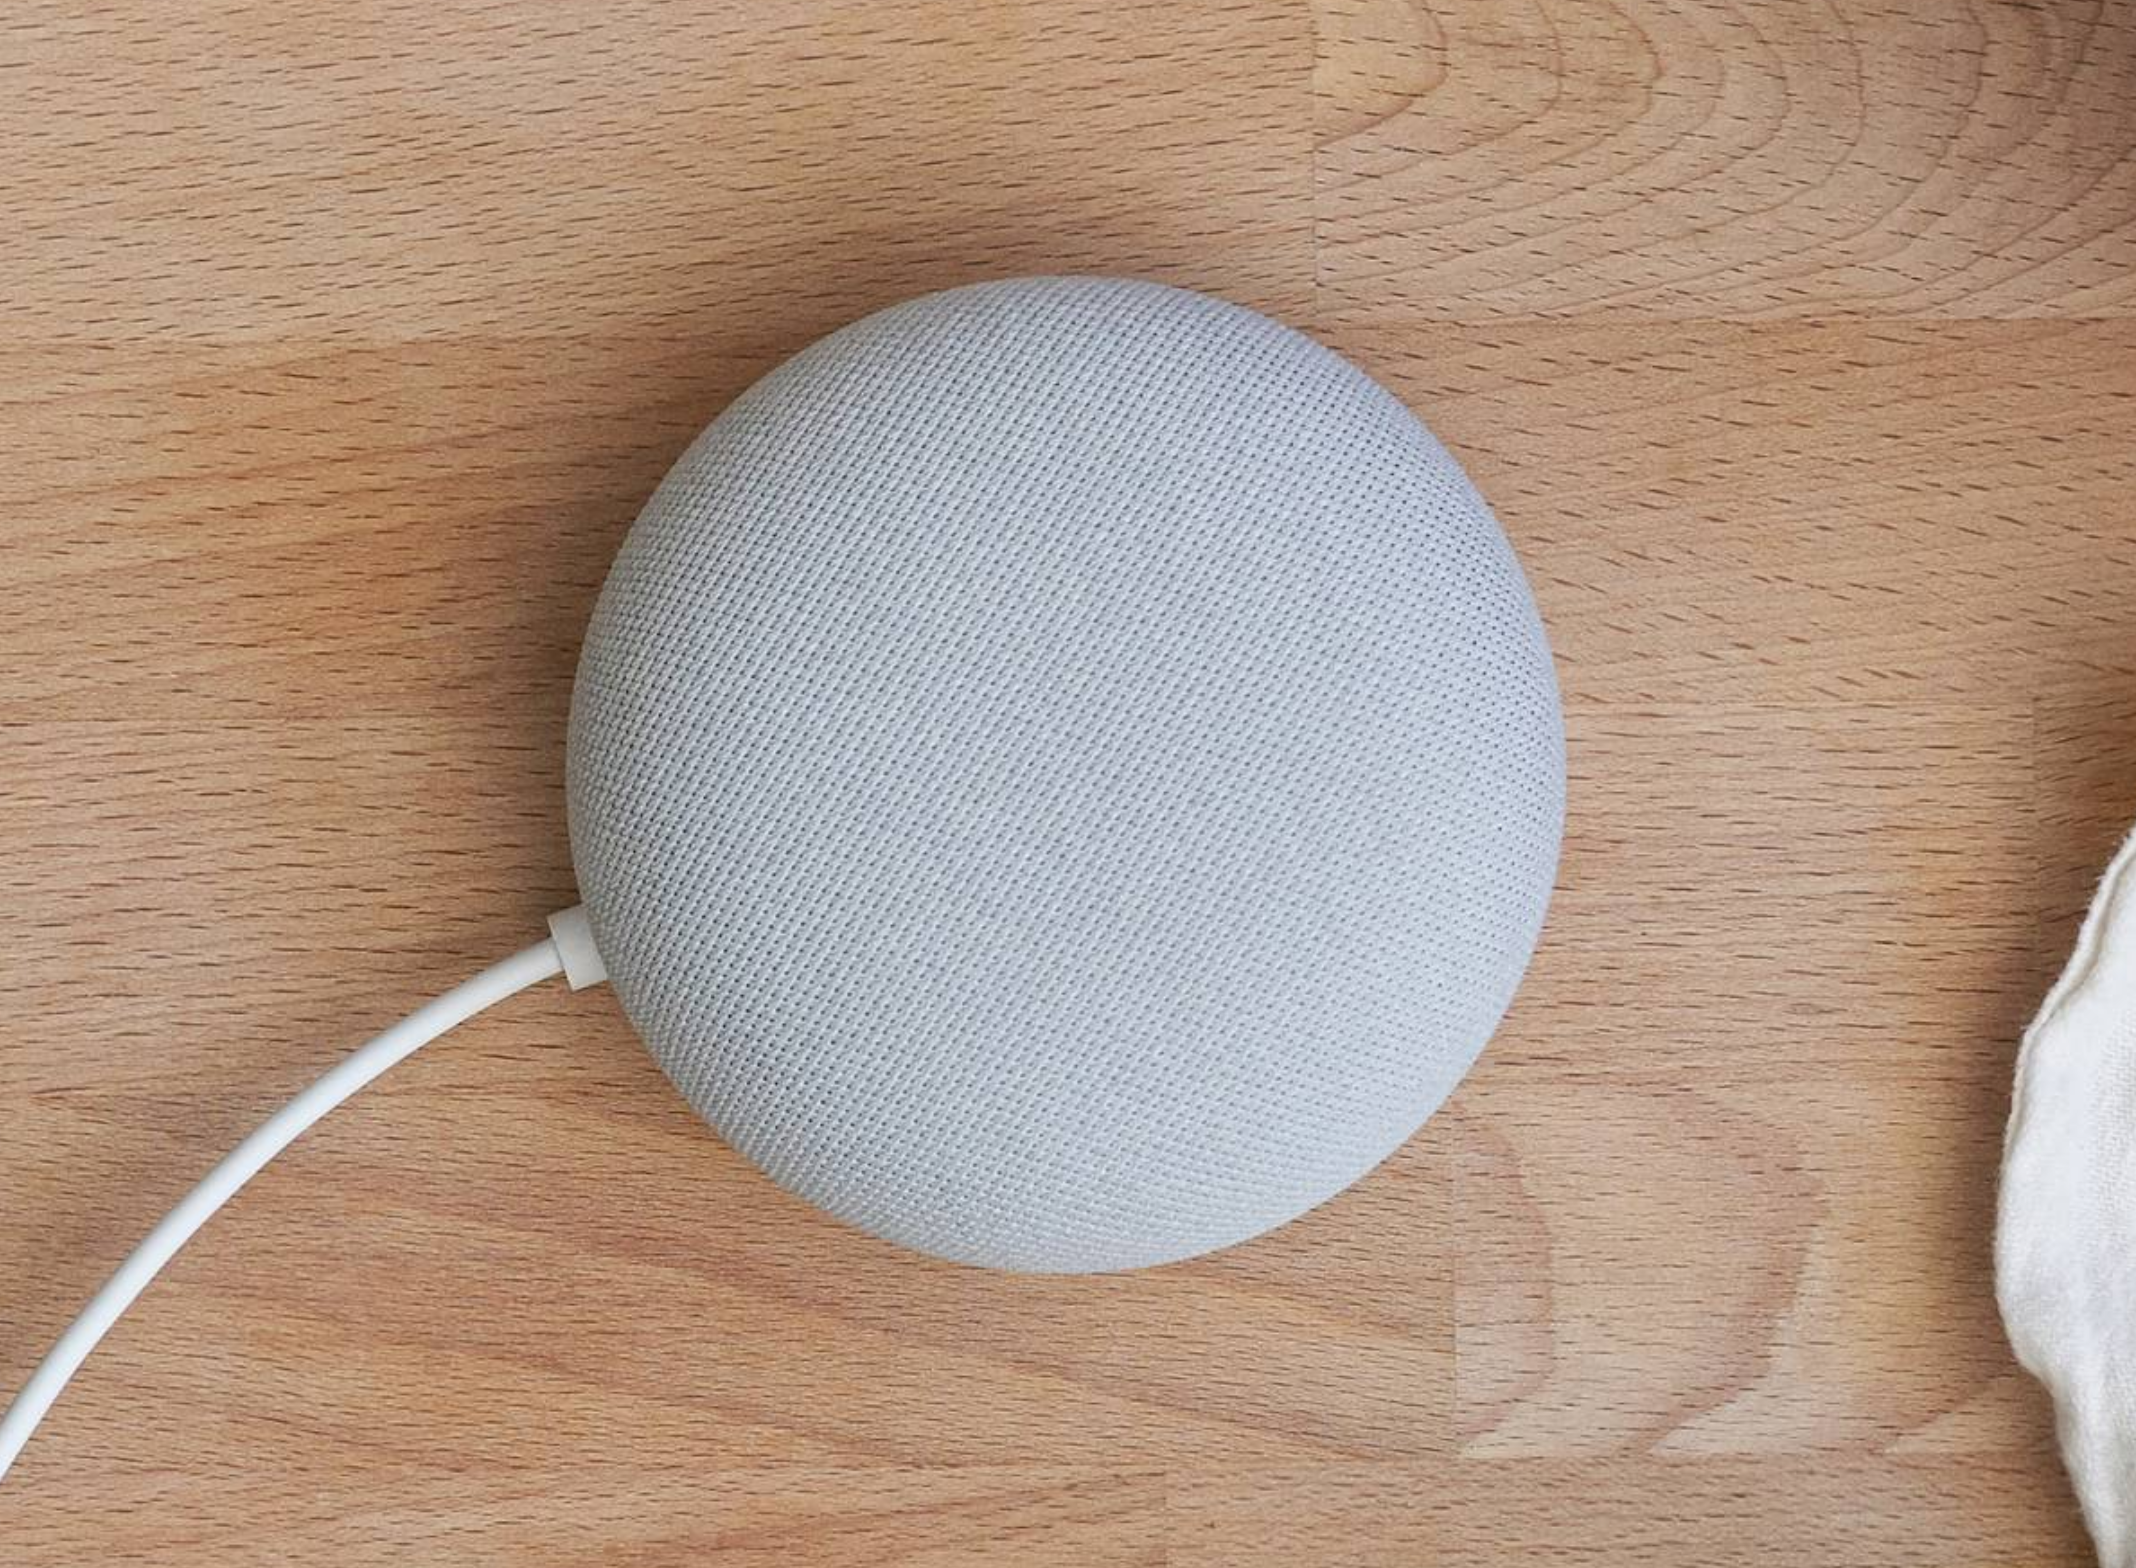 How Sonos your Google Assistant default speaker - Gearbrain